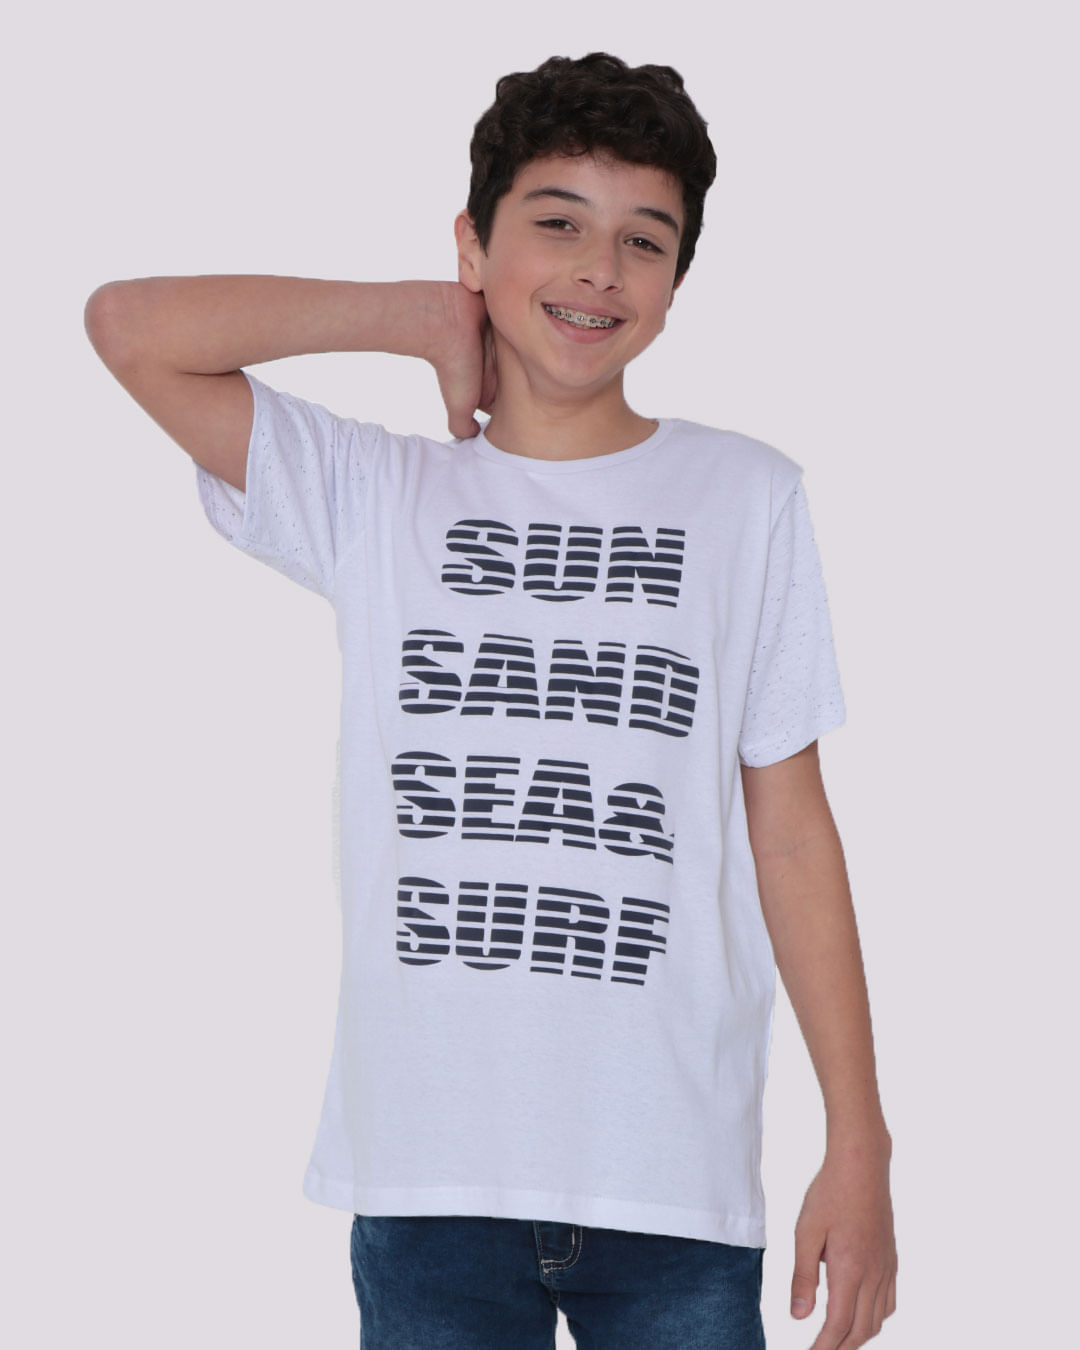 Camiseta-Juvenil-Estampa-Surf-Manga-Botone-Branca